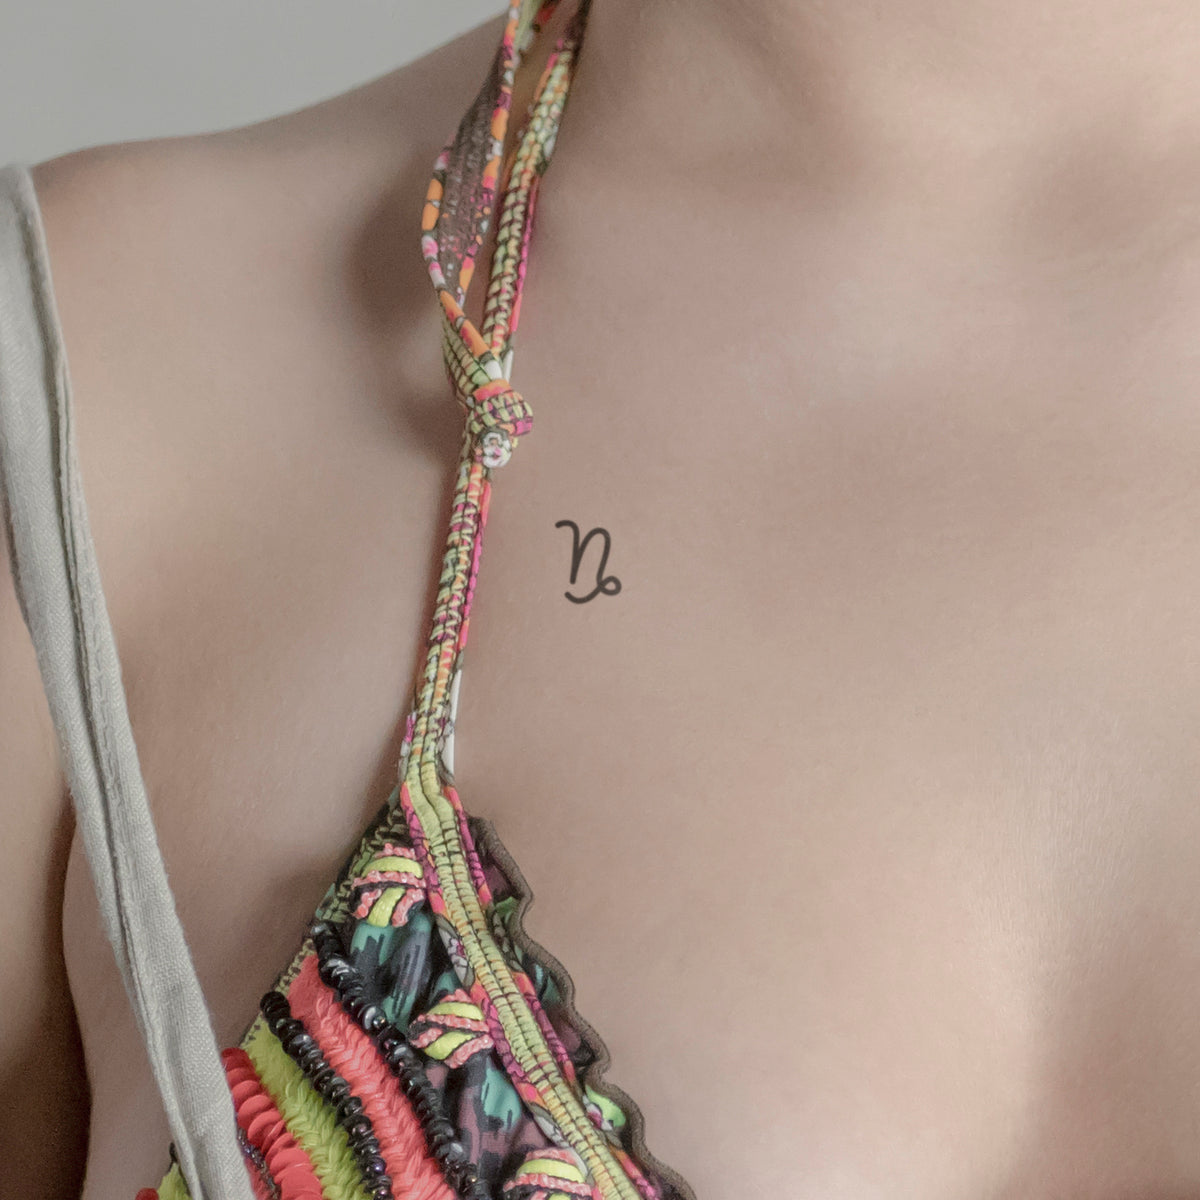 Sternzeichen Steinbock minimalistisch Tattoo von minink, der Marke für temporäre Tattoos.